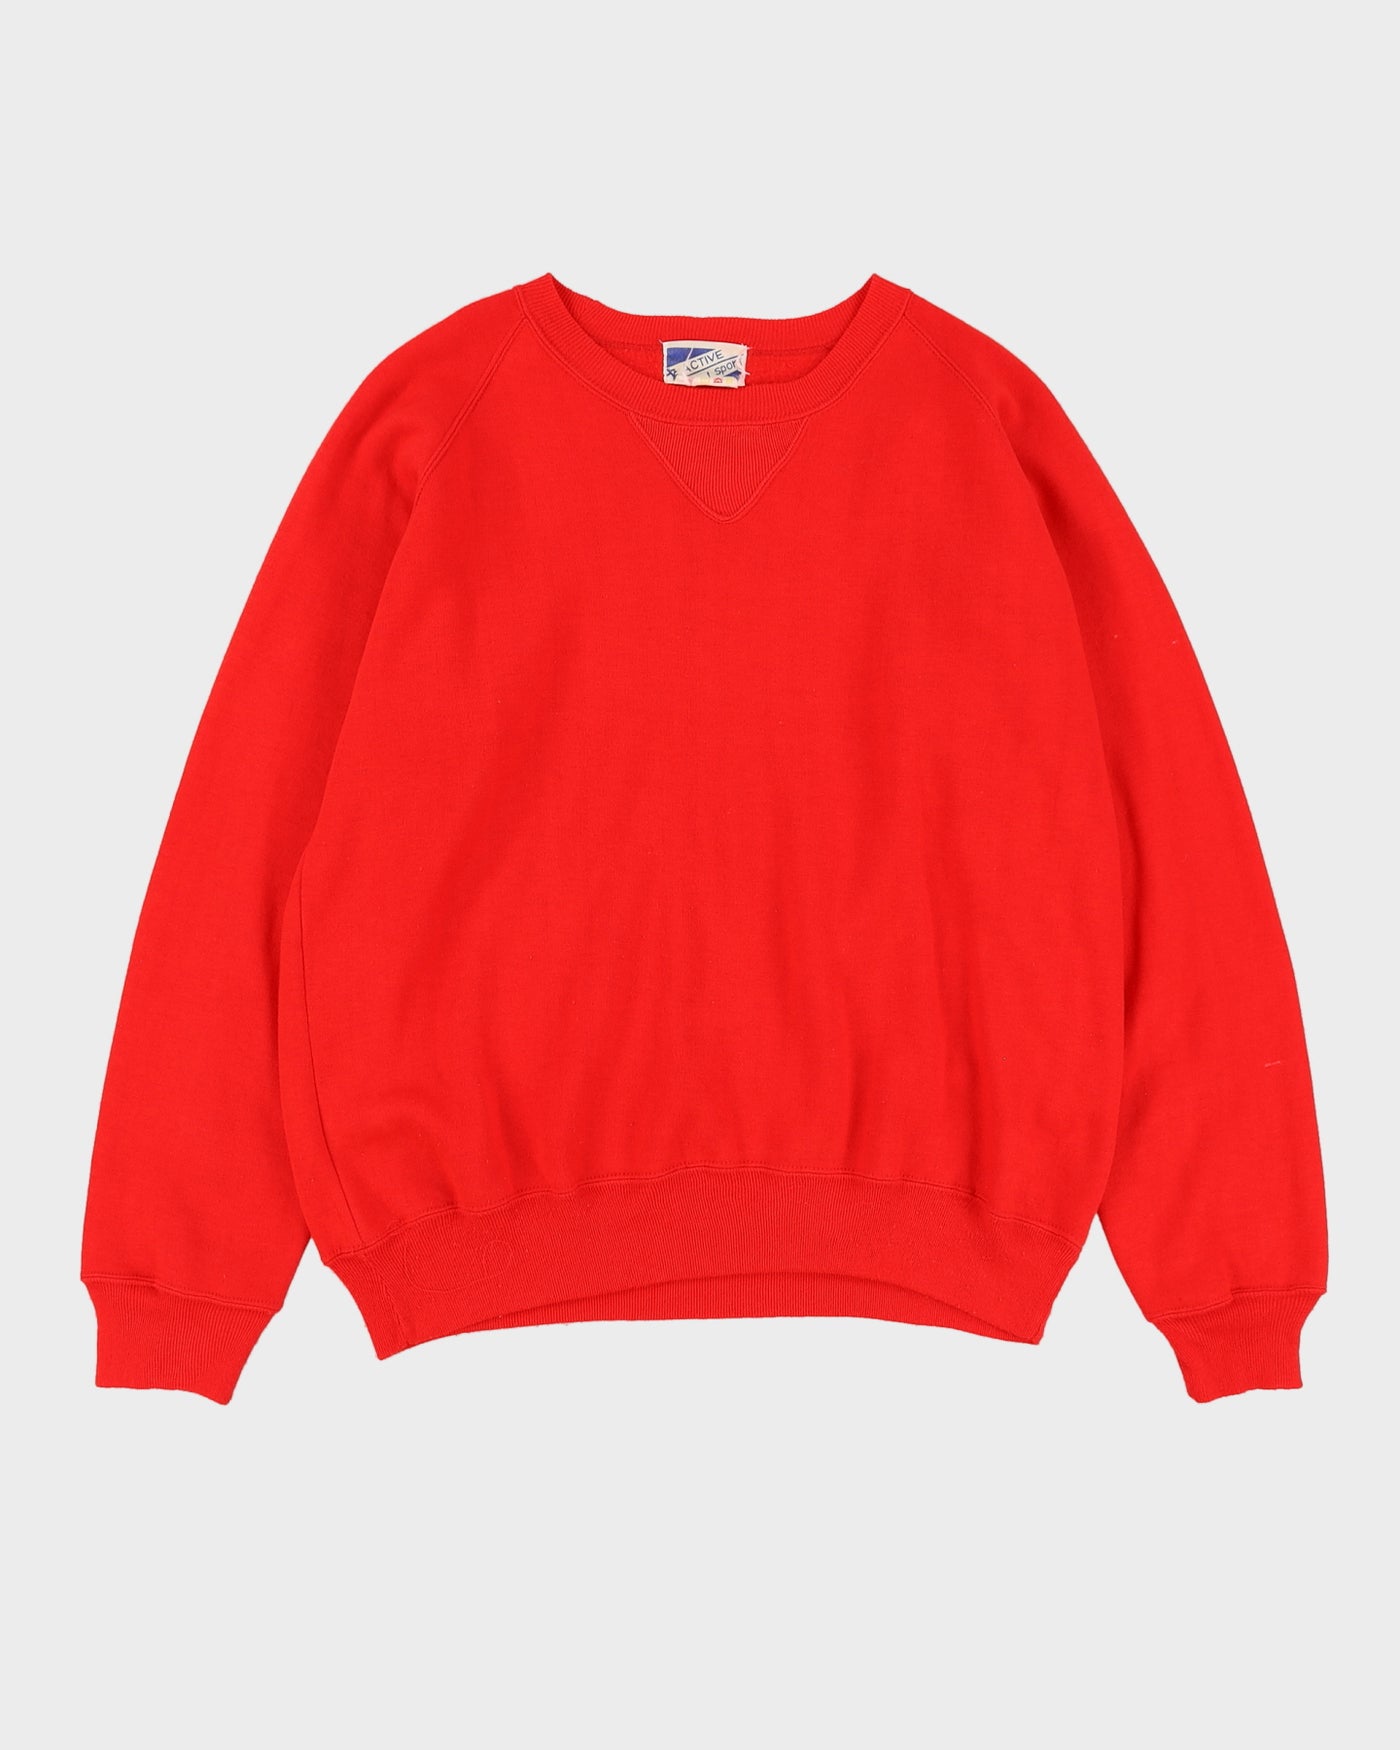 Vintage 70s Red Active Sport Crewneck Sweatshirt- L